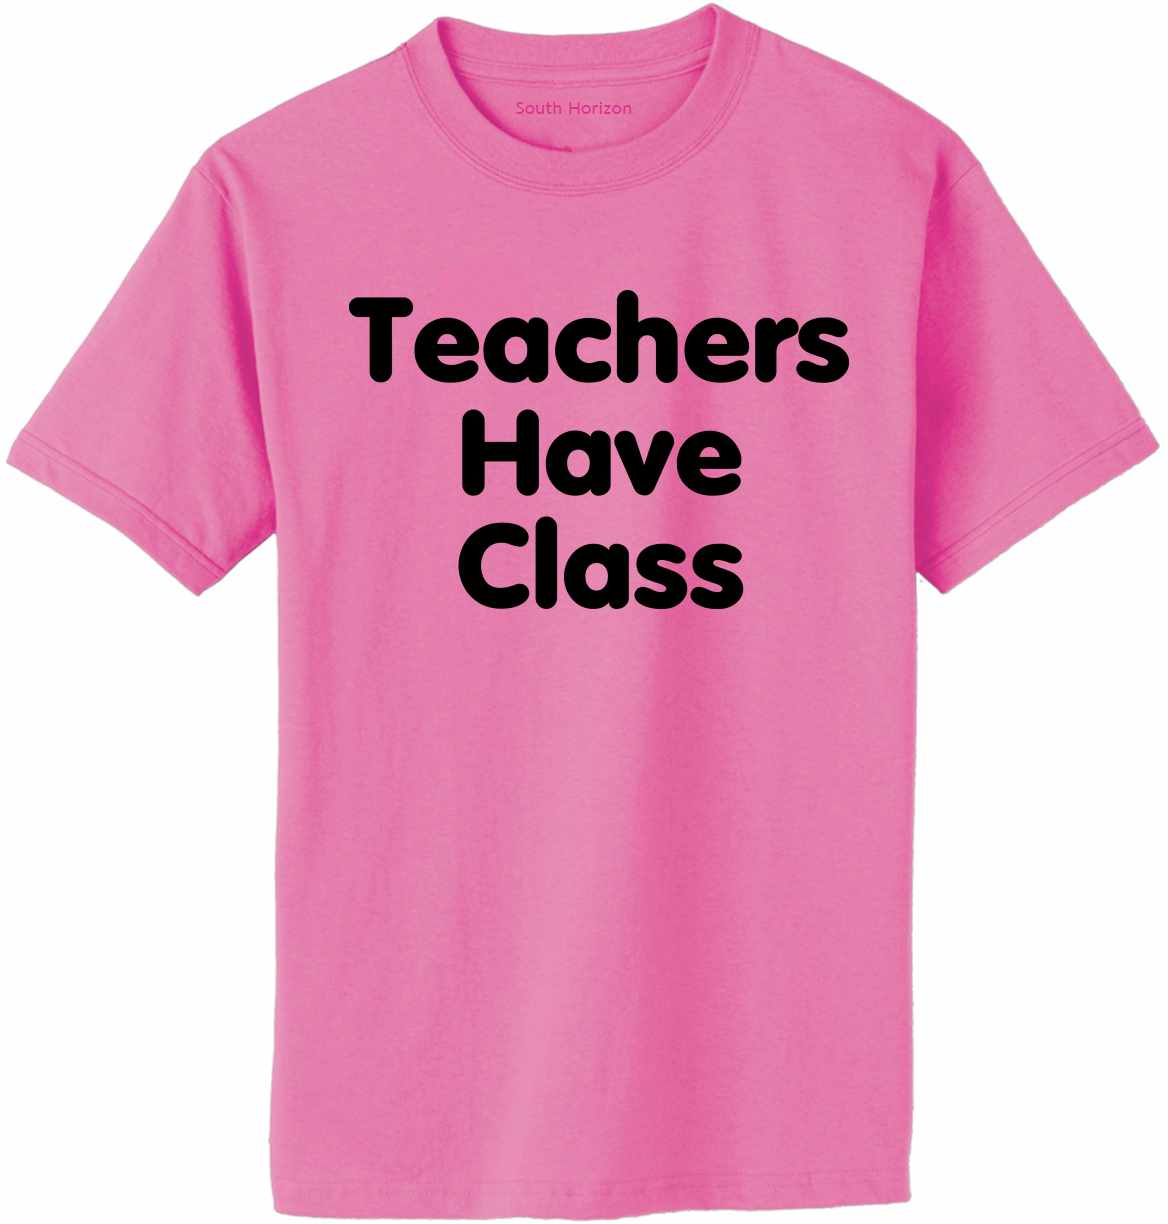 Teachers Have Class Adult T-Shirt (#928-1)